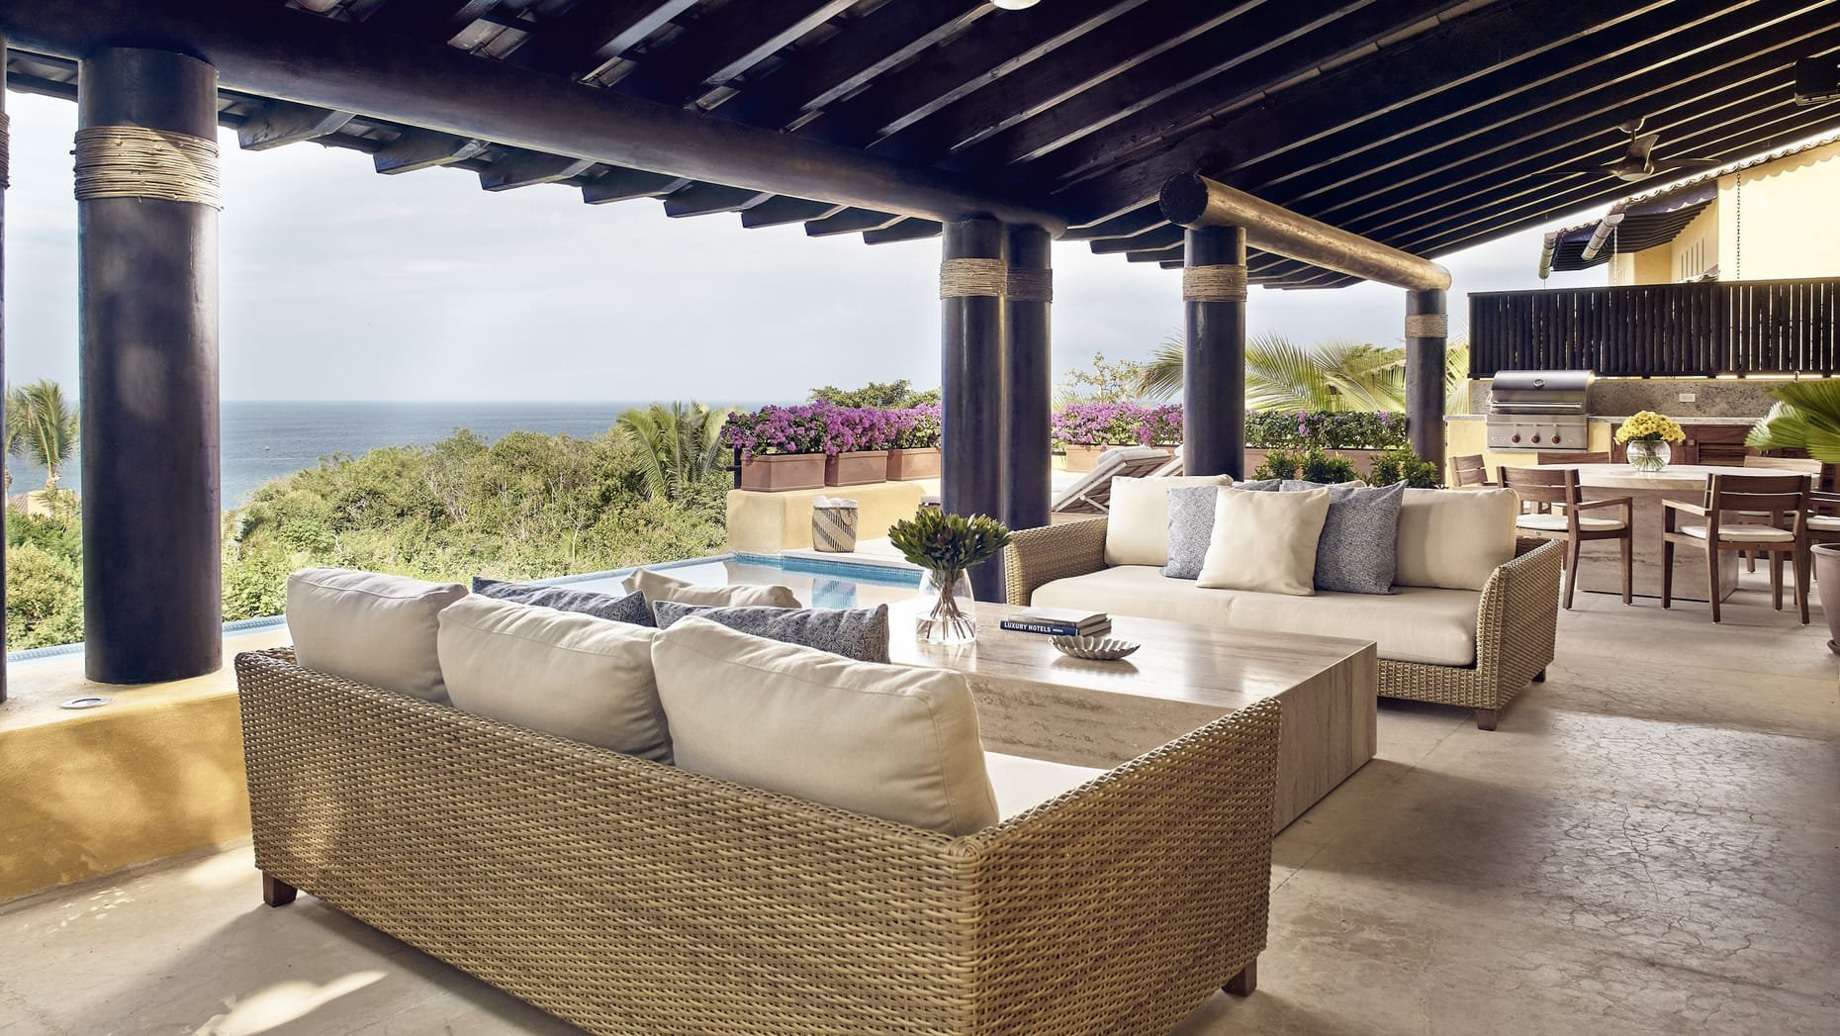 Four Seasons Resort Punta Mita – Nayarit, Mexico – Invierno Ocean Villa Deck